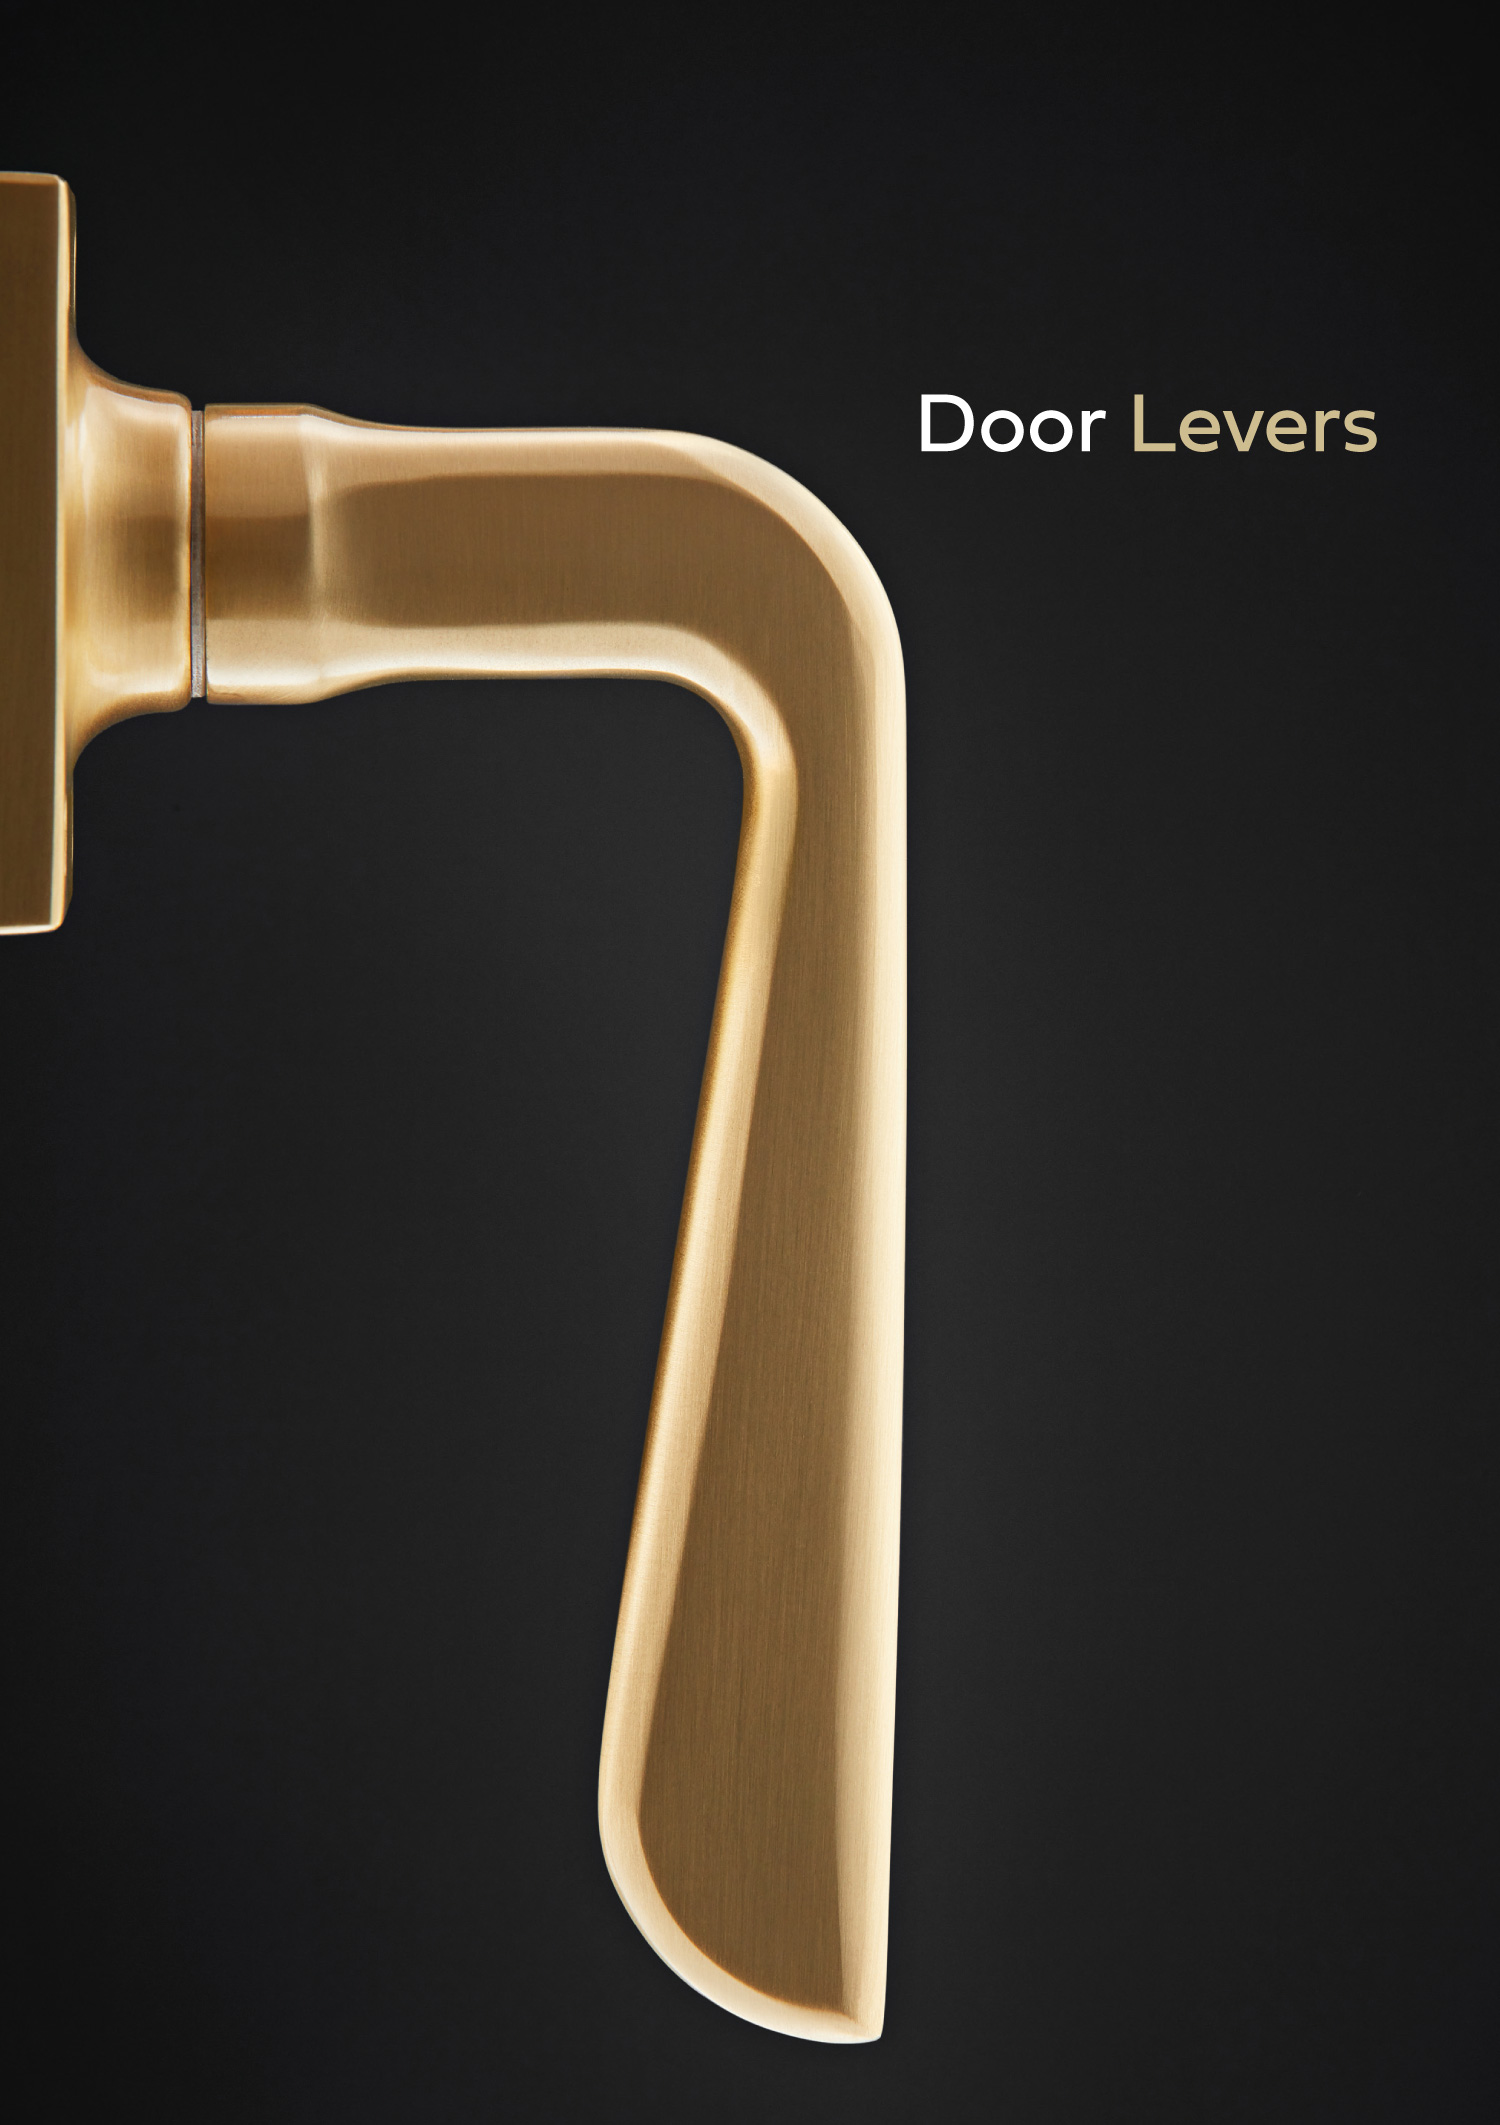 Door levers brochure by Croft